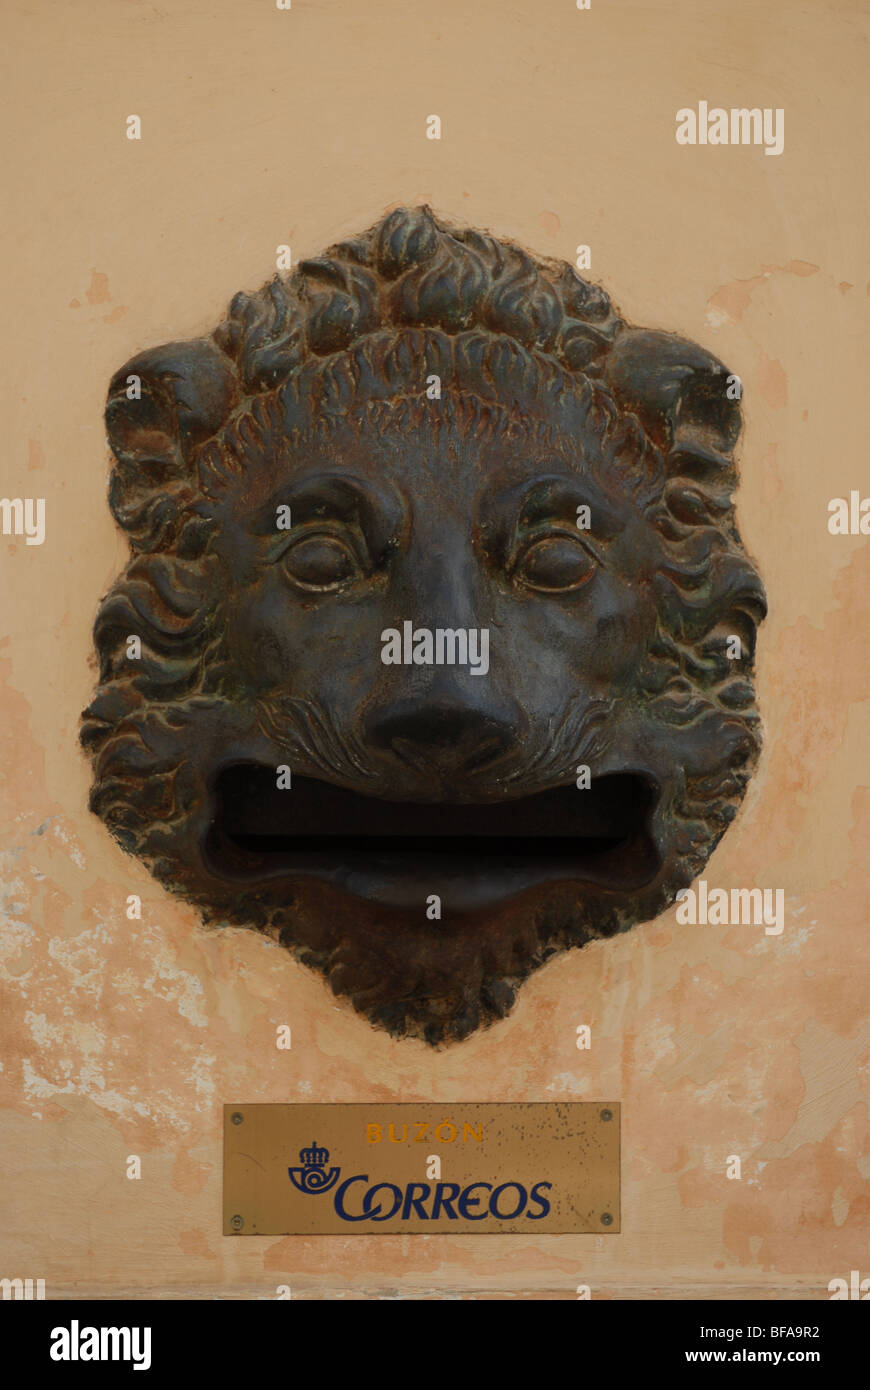 Correos lettre fort dans la forme d'un lion, Calle Real, l'Alhambra, Grenade, Espagne, Andallusia Banque D'Images